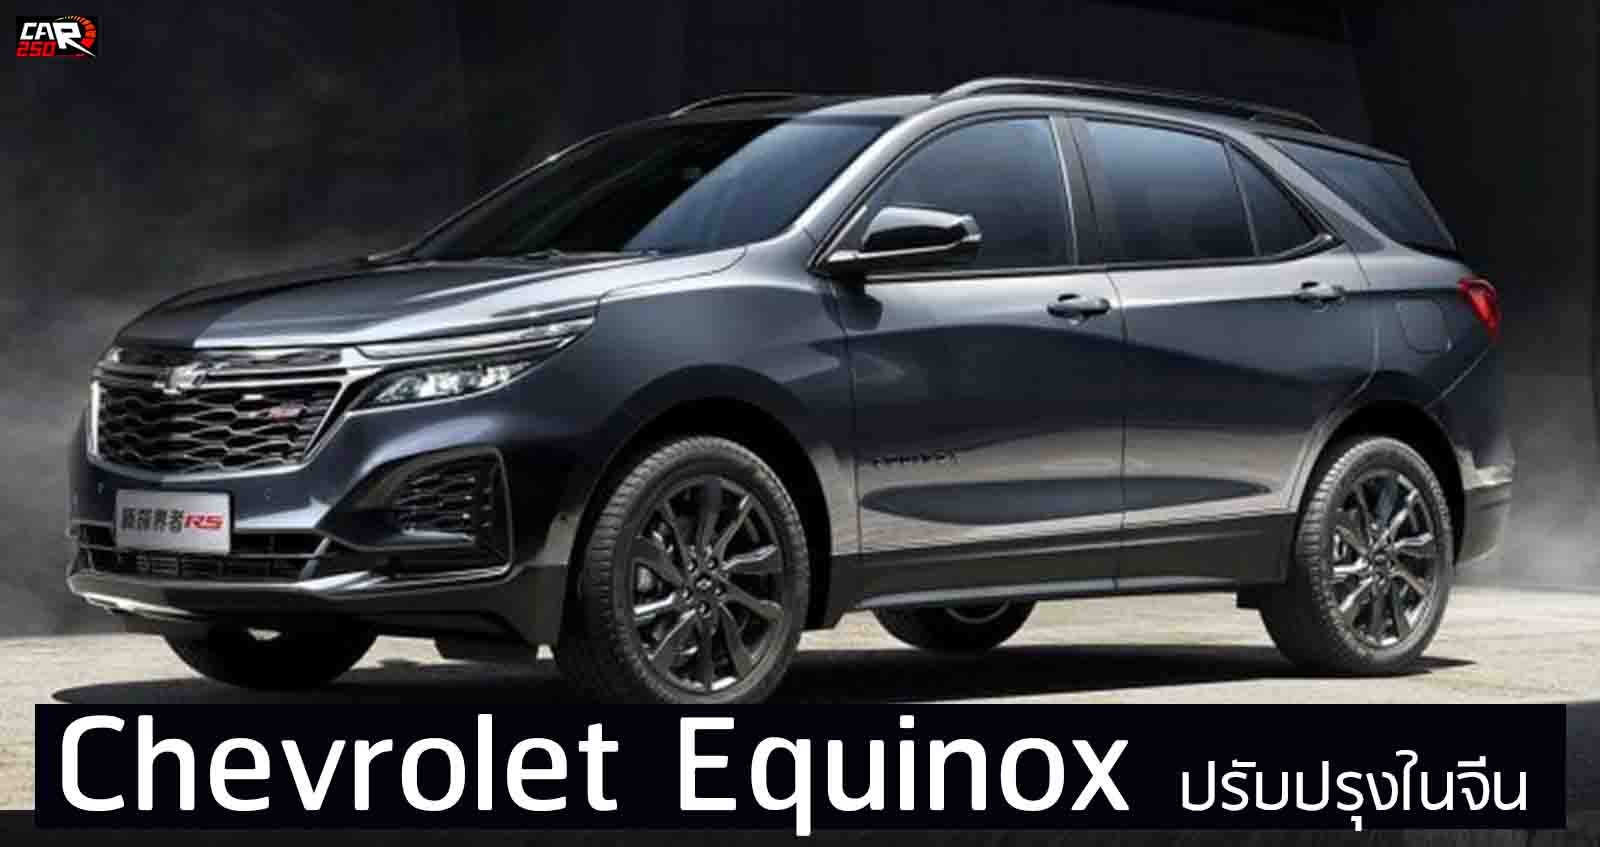 เปิดตัว Chevrolet Equinox รุ่นปรับปรุงในจีน 3 บล๊อกเครื่องยนต์